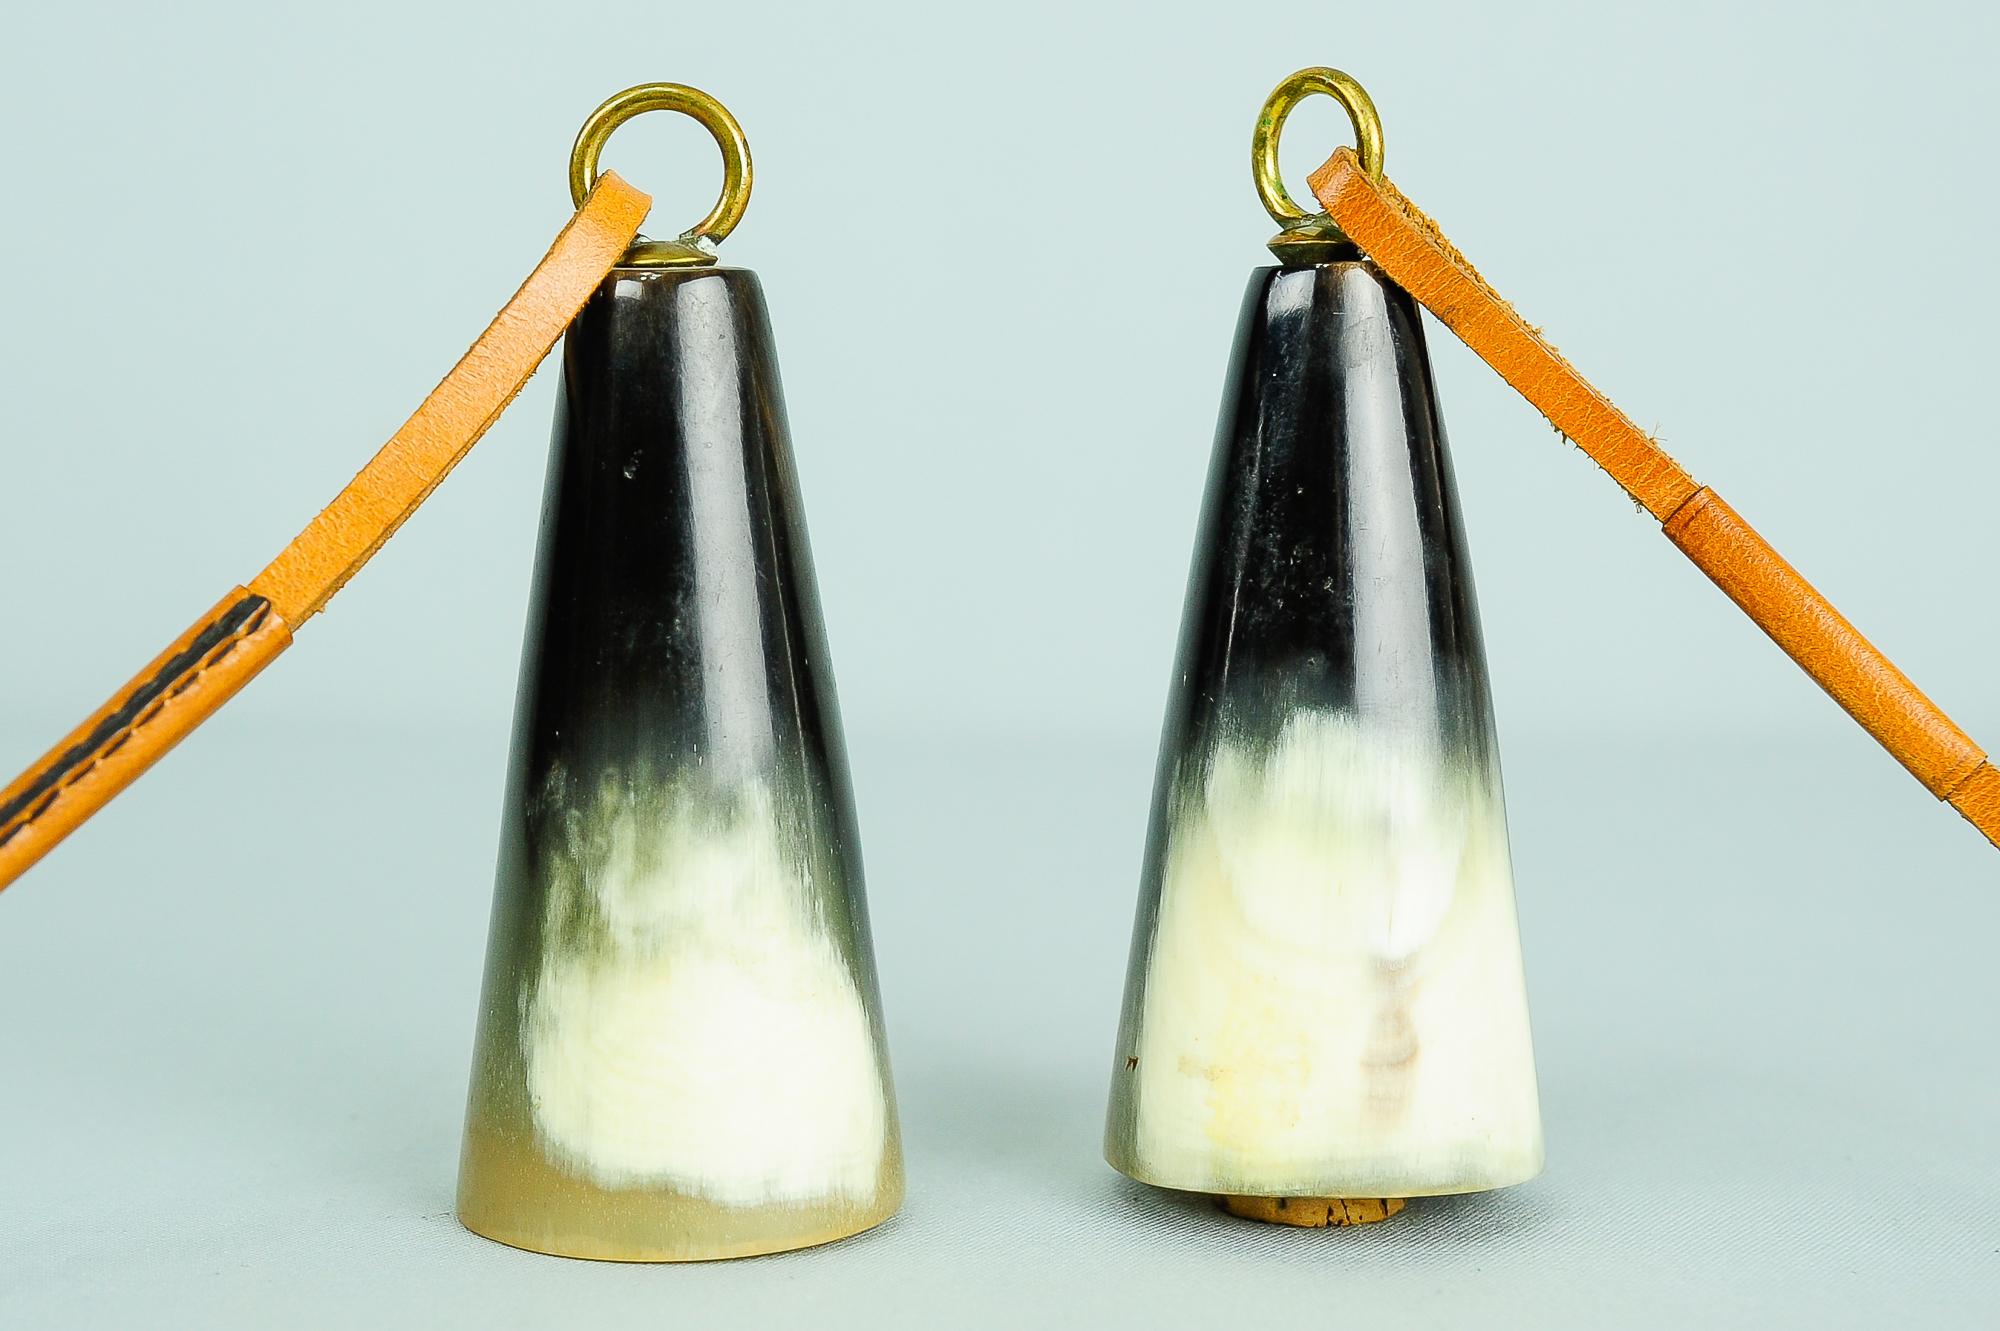 Bouchon de bouteille Carl Auböck, corne, cuir, Autriche, années 1950
État d'origine
Le prix est pour les deux ensemble.